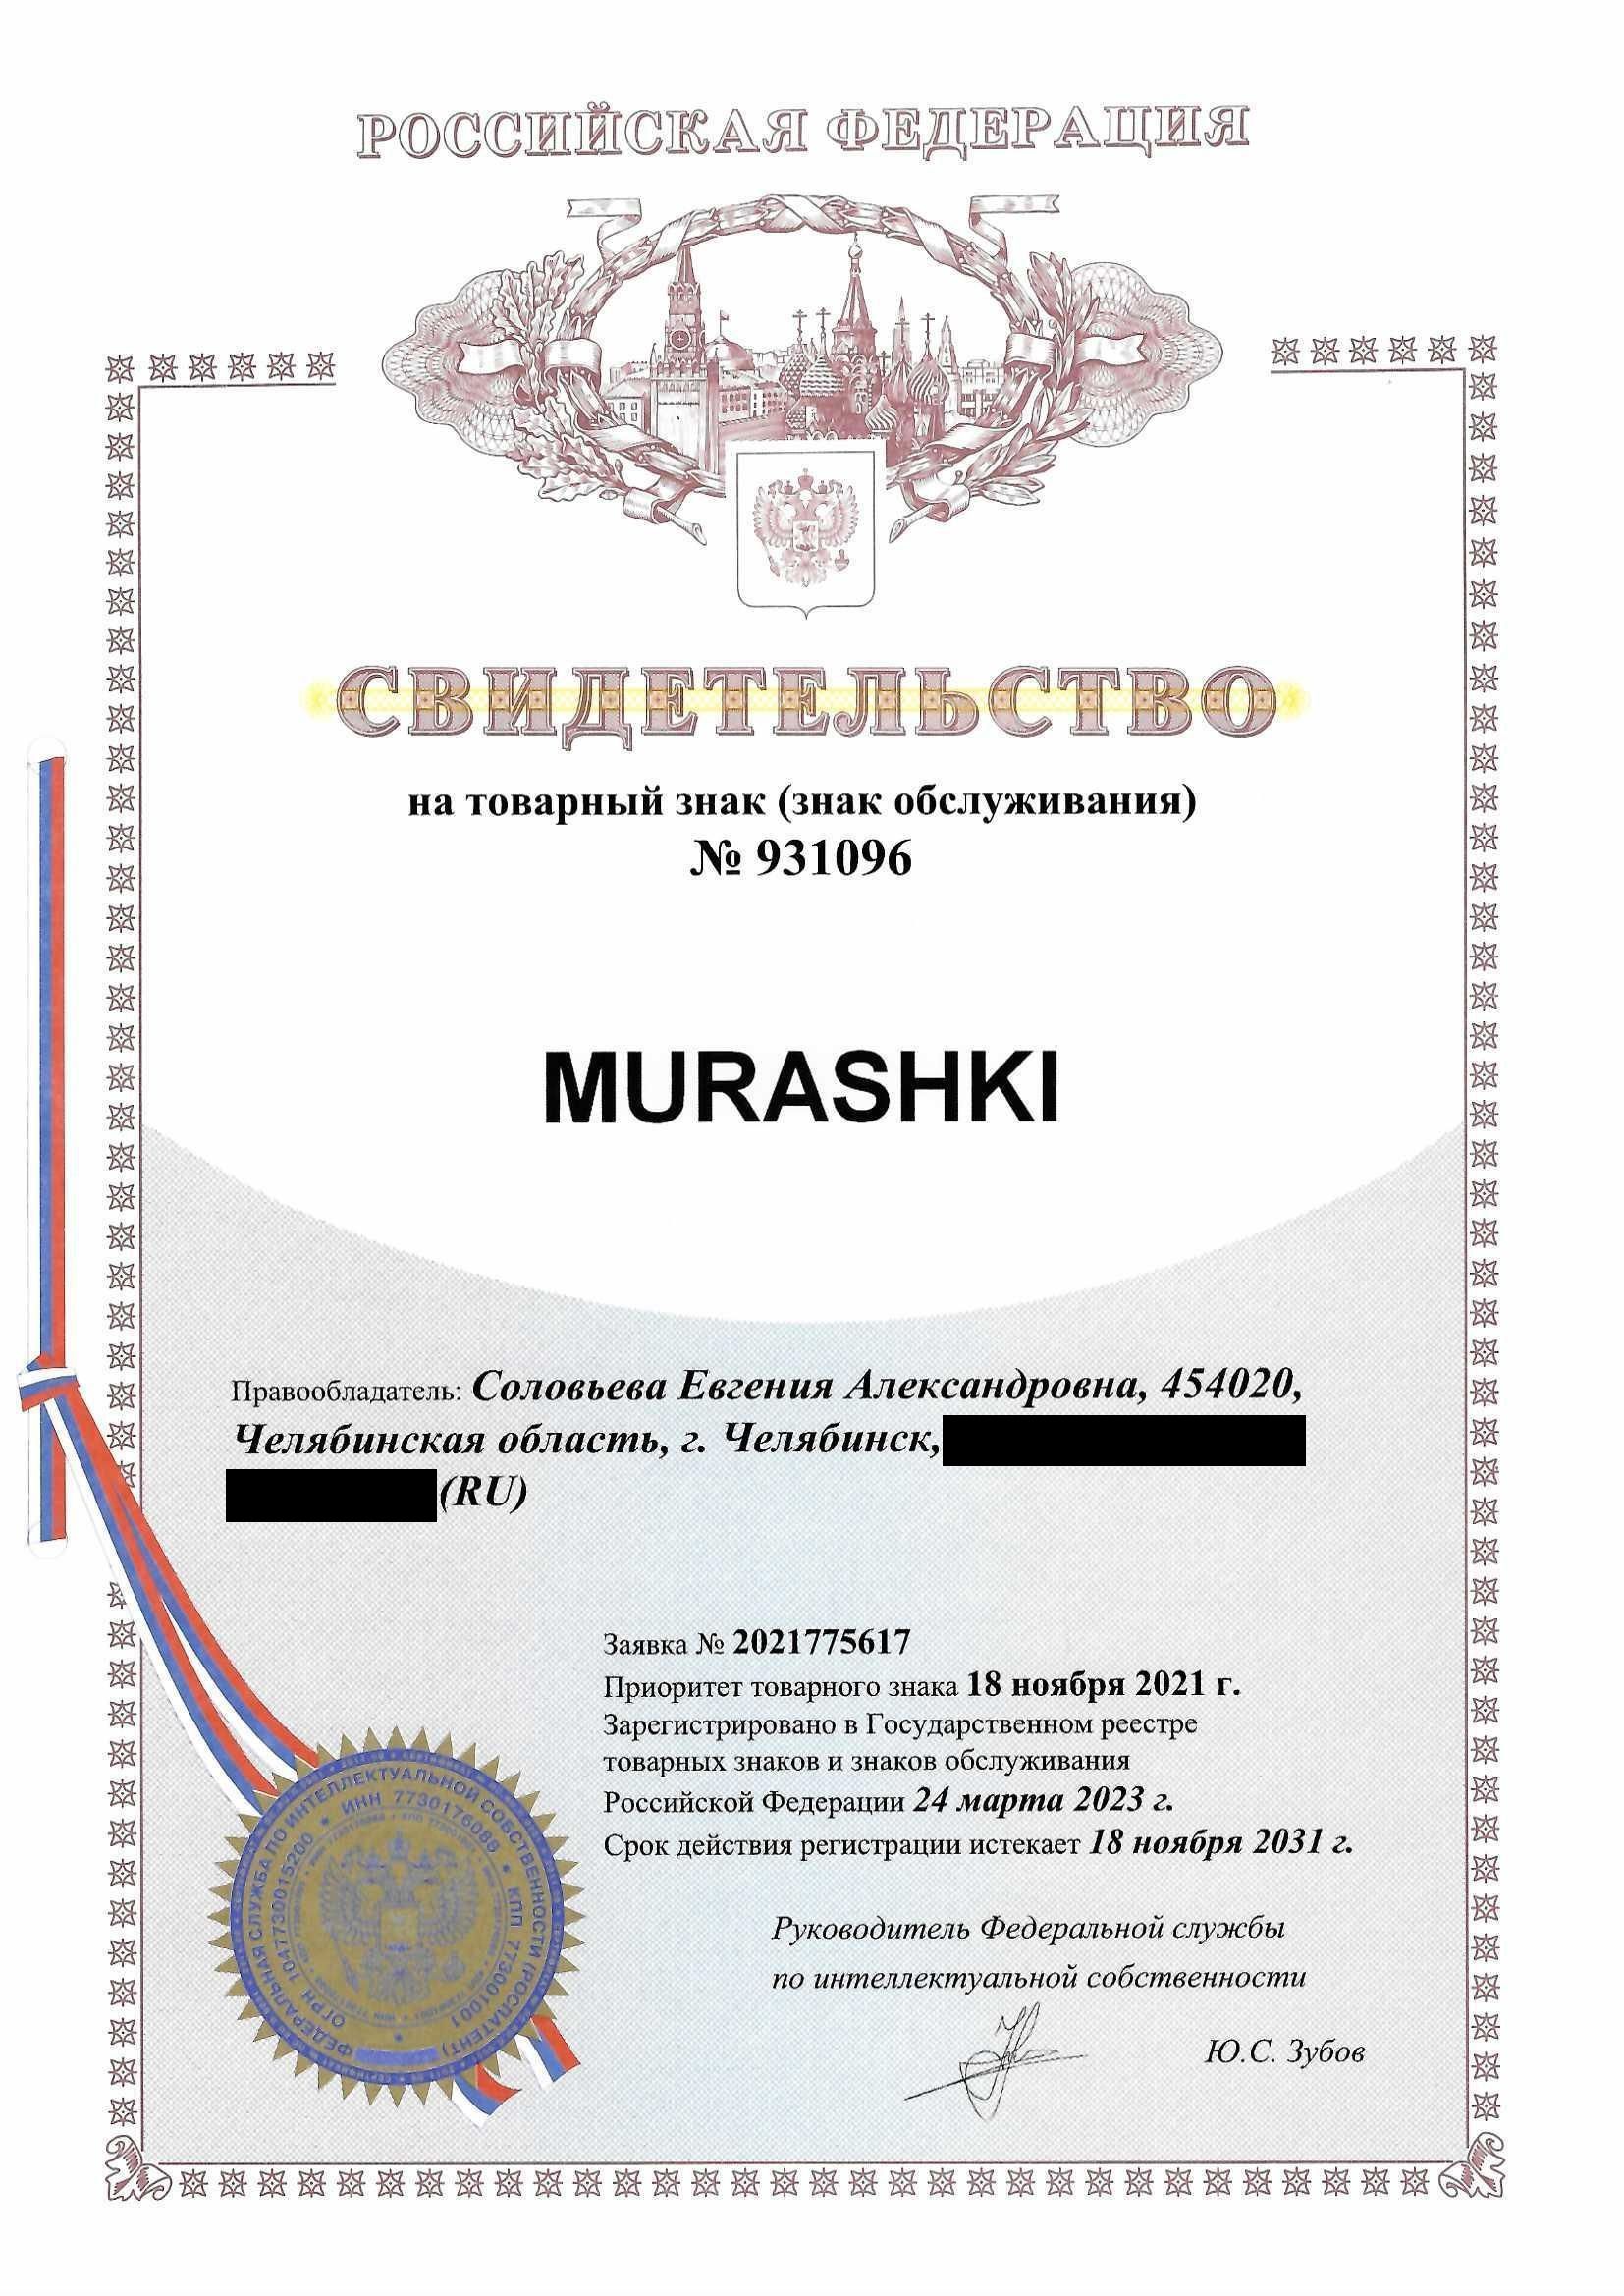 Товарный знак № 931096 – Murashki